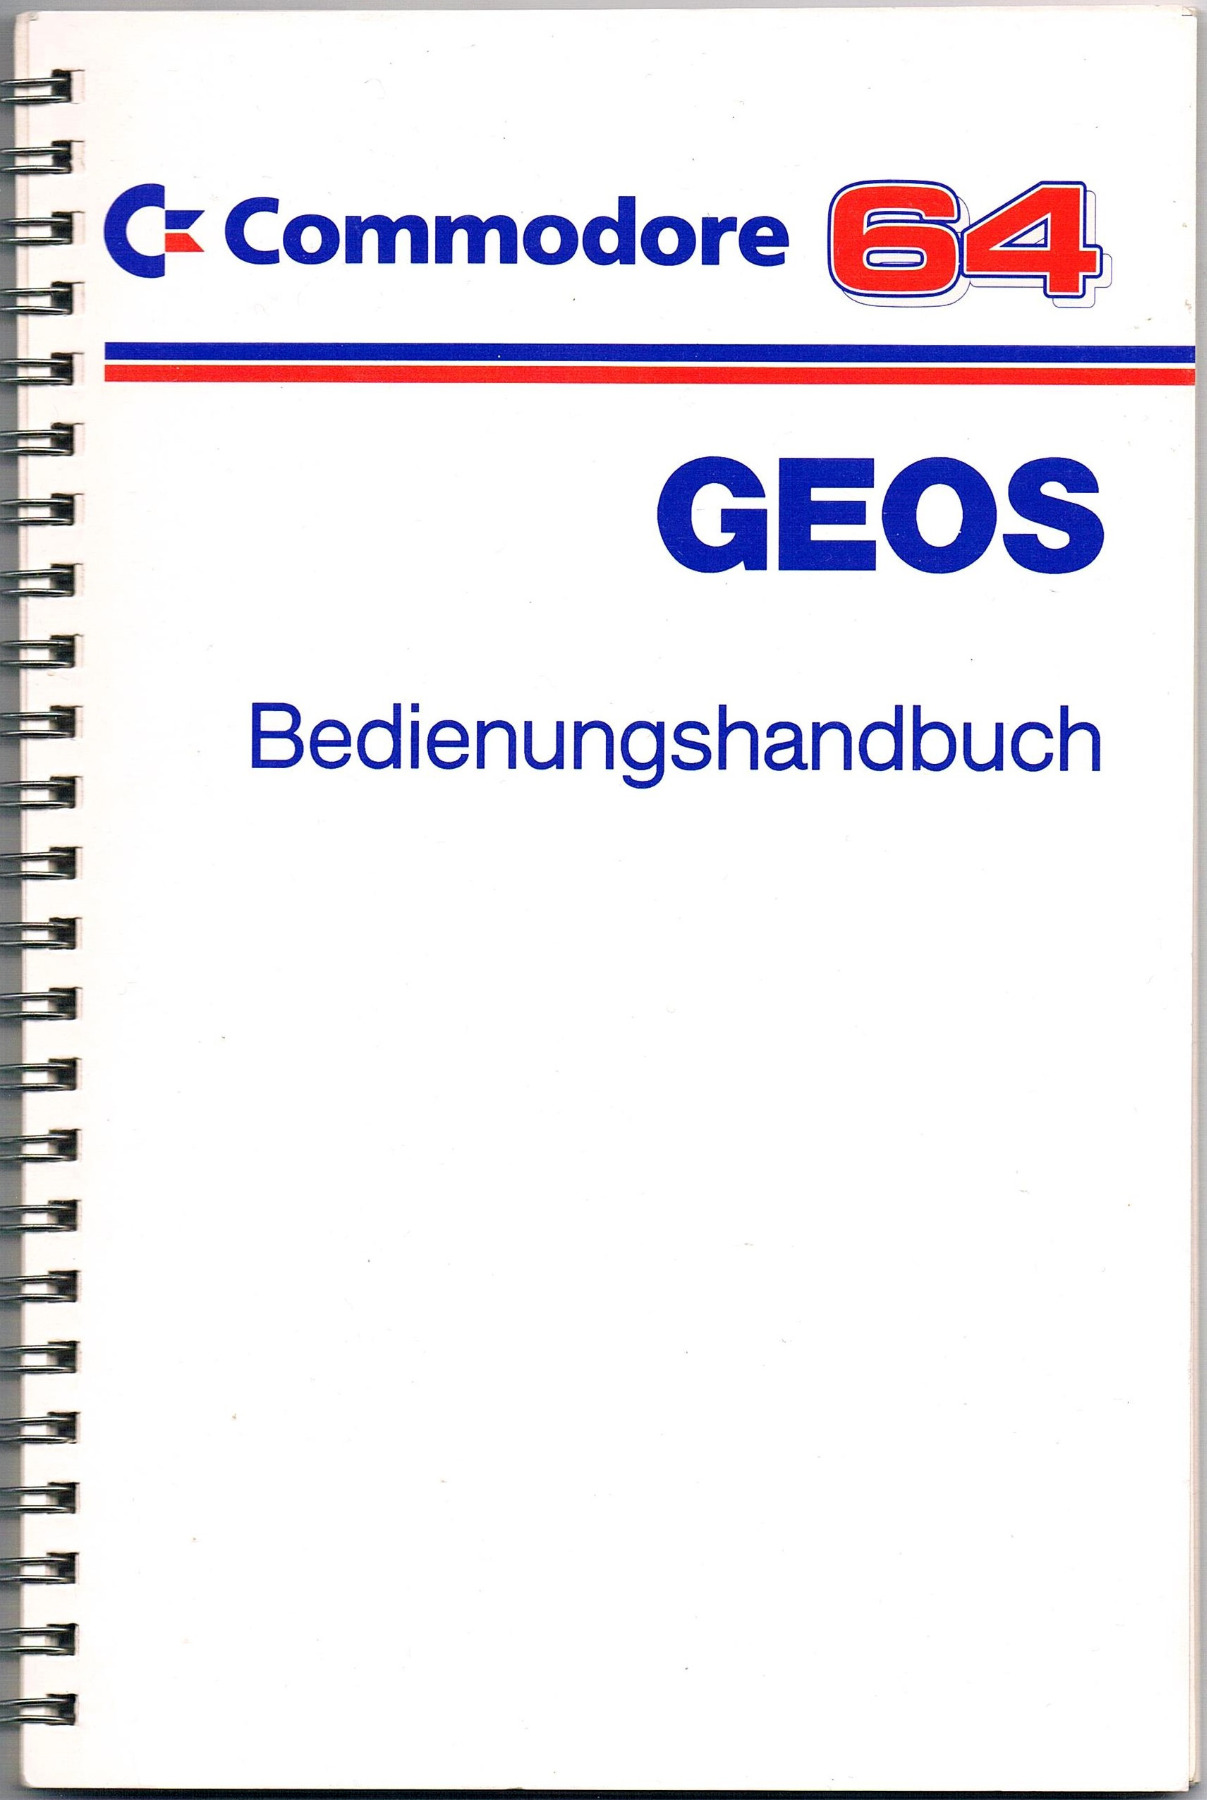 Geos Bedienungshandbuch für den Commodore 64 / C64